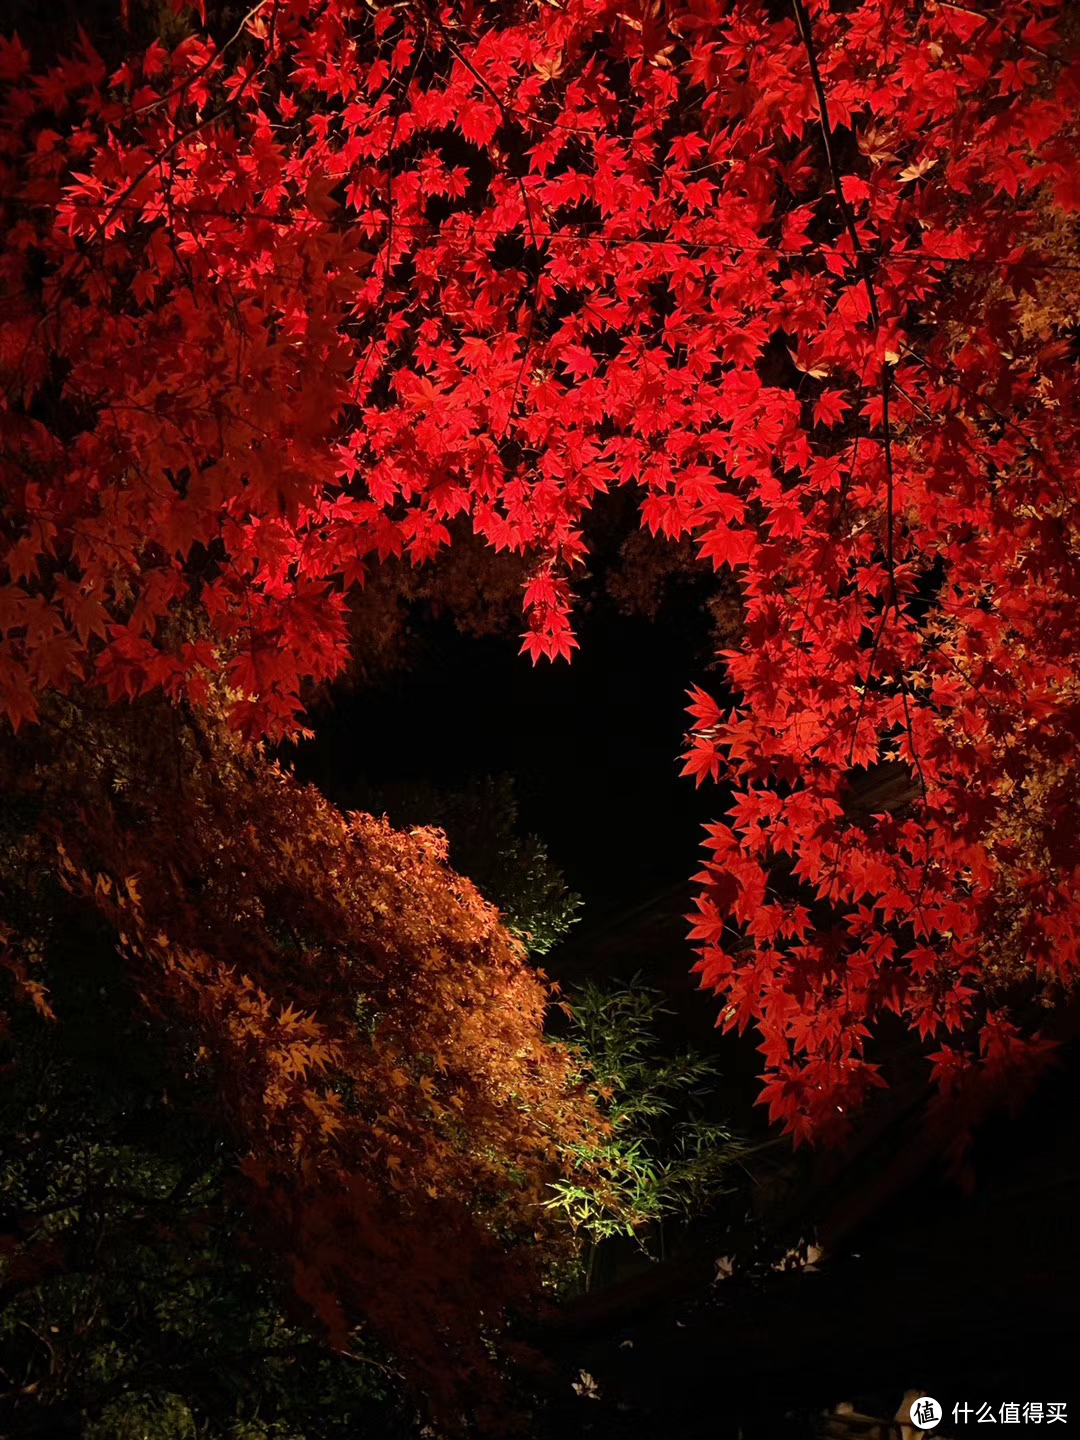 夜游一年只开二季的超级网红景点—京都琉璃光园攻略